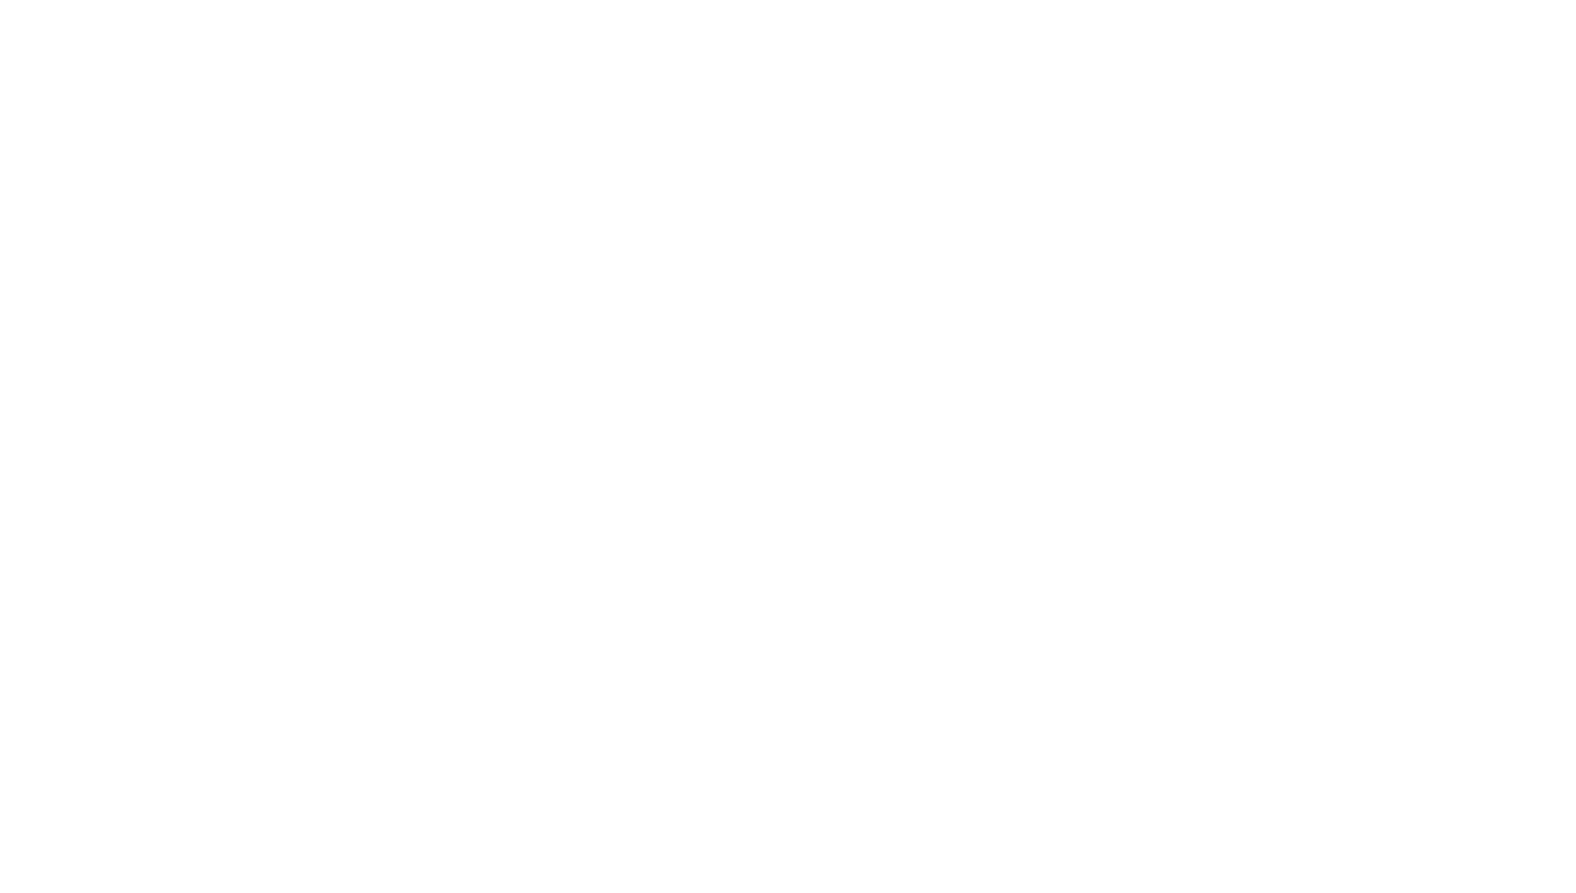 M1 Kliniken AG logo for dark backgrounds (transparent PNG)